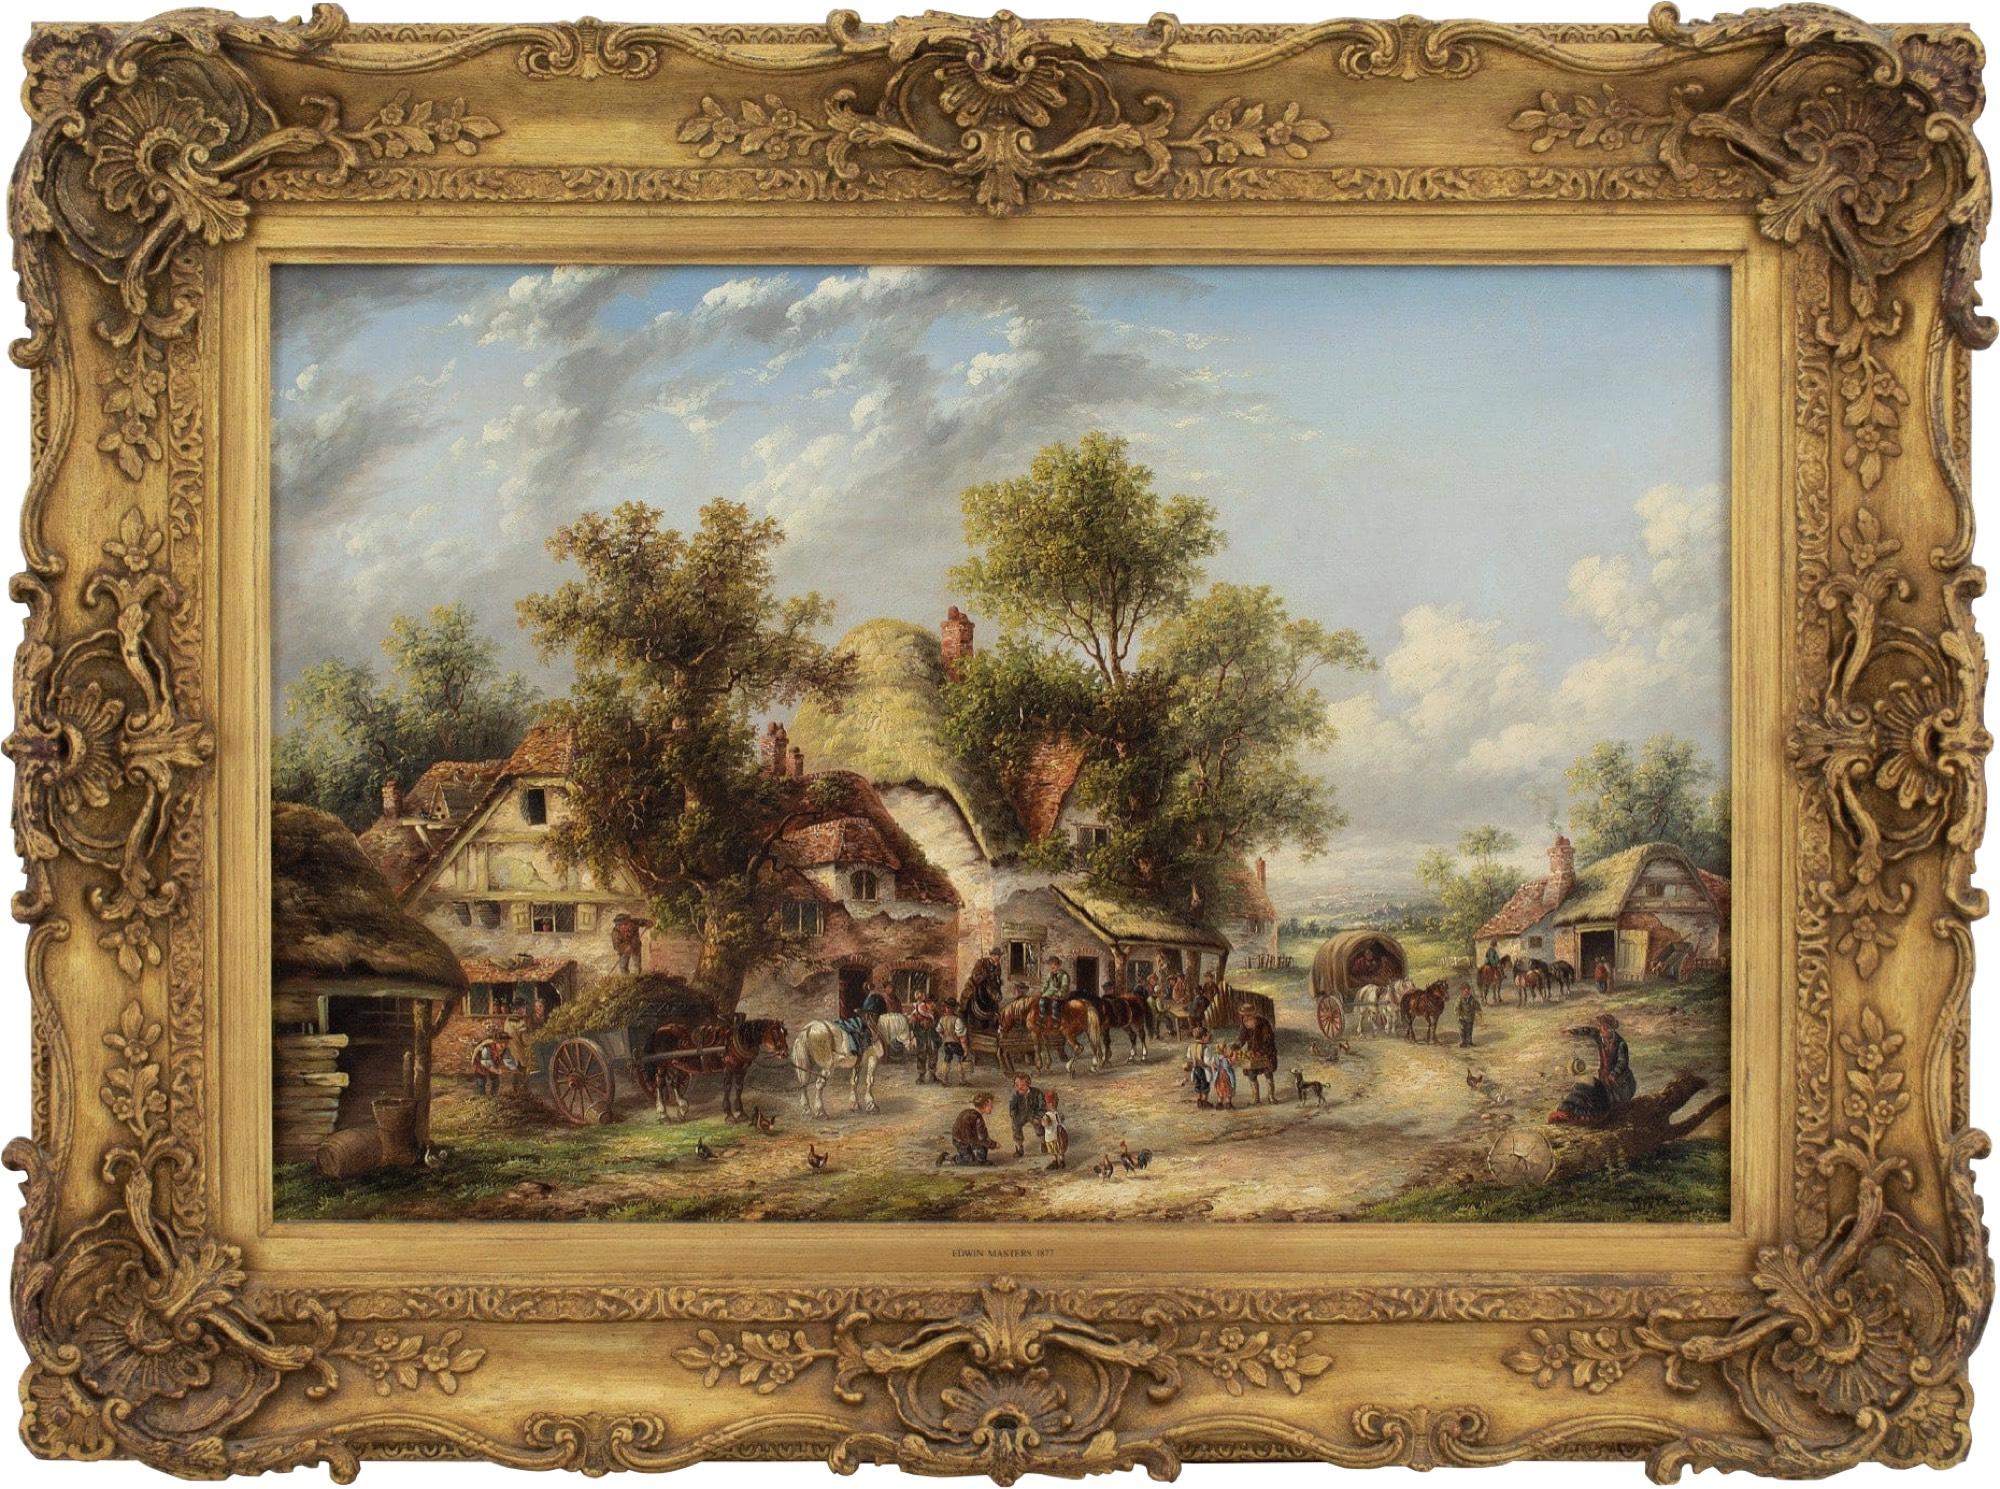 Cette charmante peinture à l'huile de l'artiste britannique Edwin Masters (act. 1862-1877) représente une scène de village animée avec plusieurs chaumières et personnages. Il est plein de vie et chaque personnage semble raconter sa propre